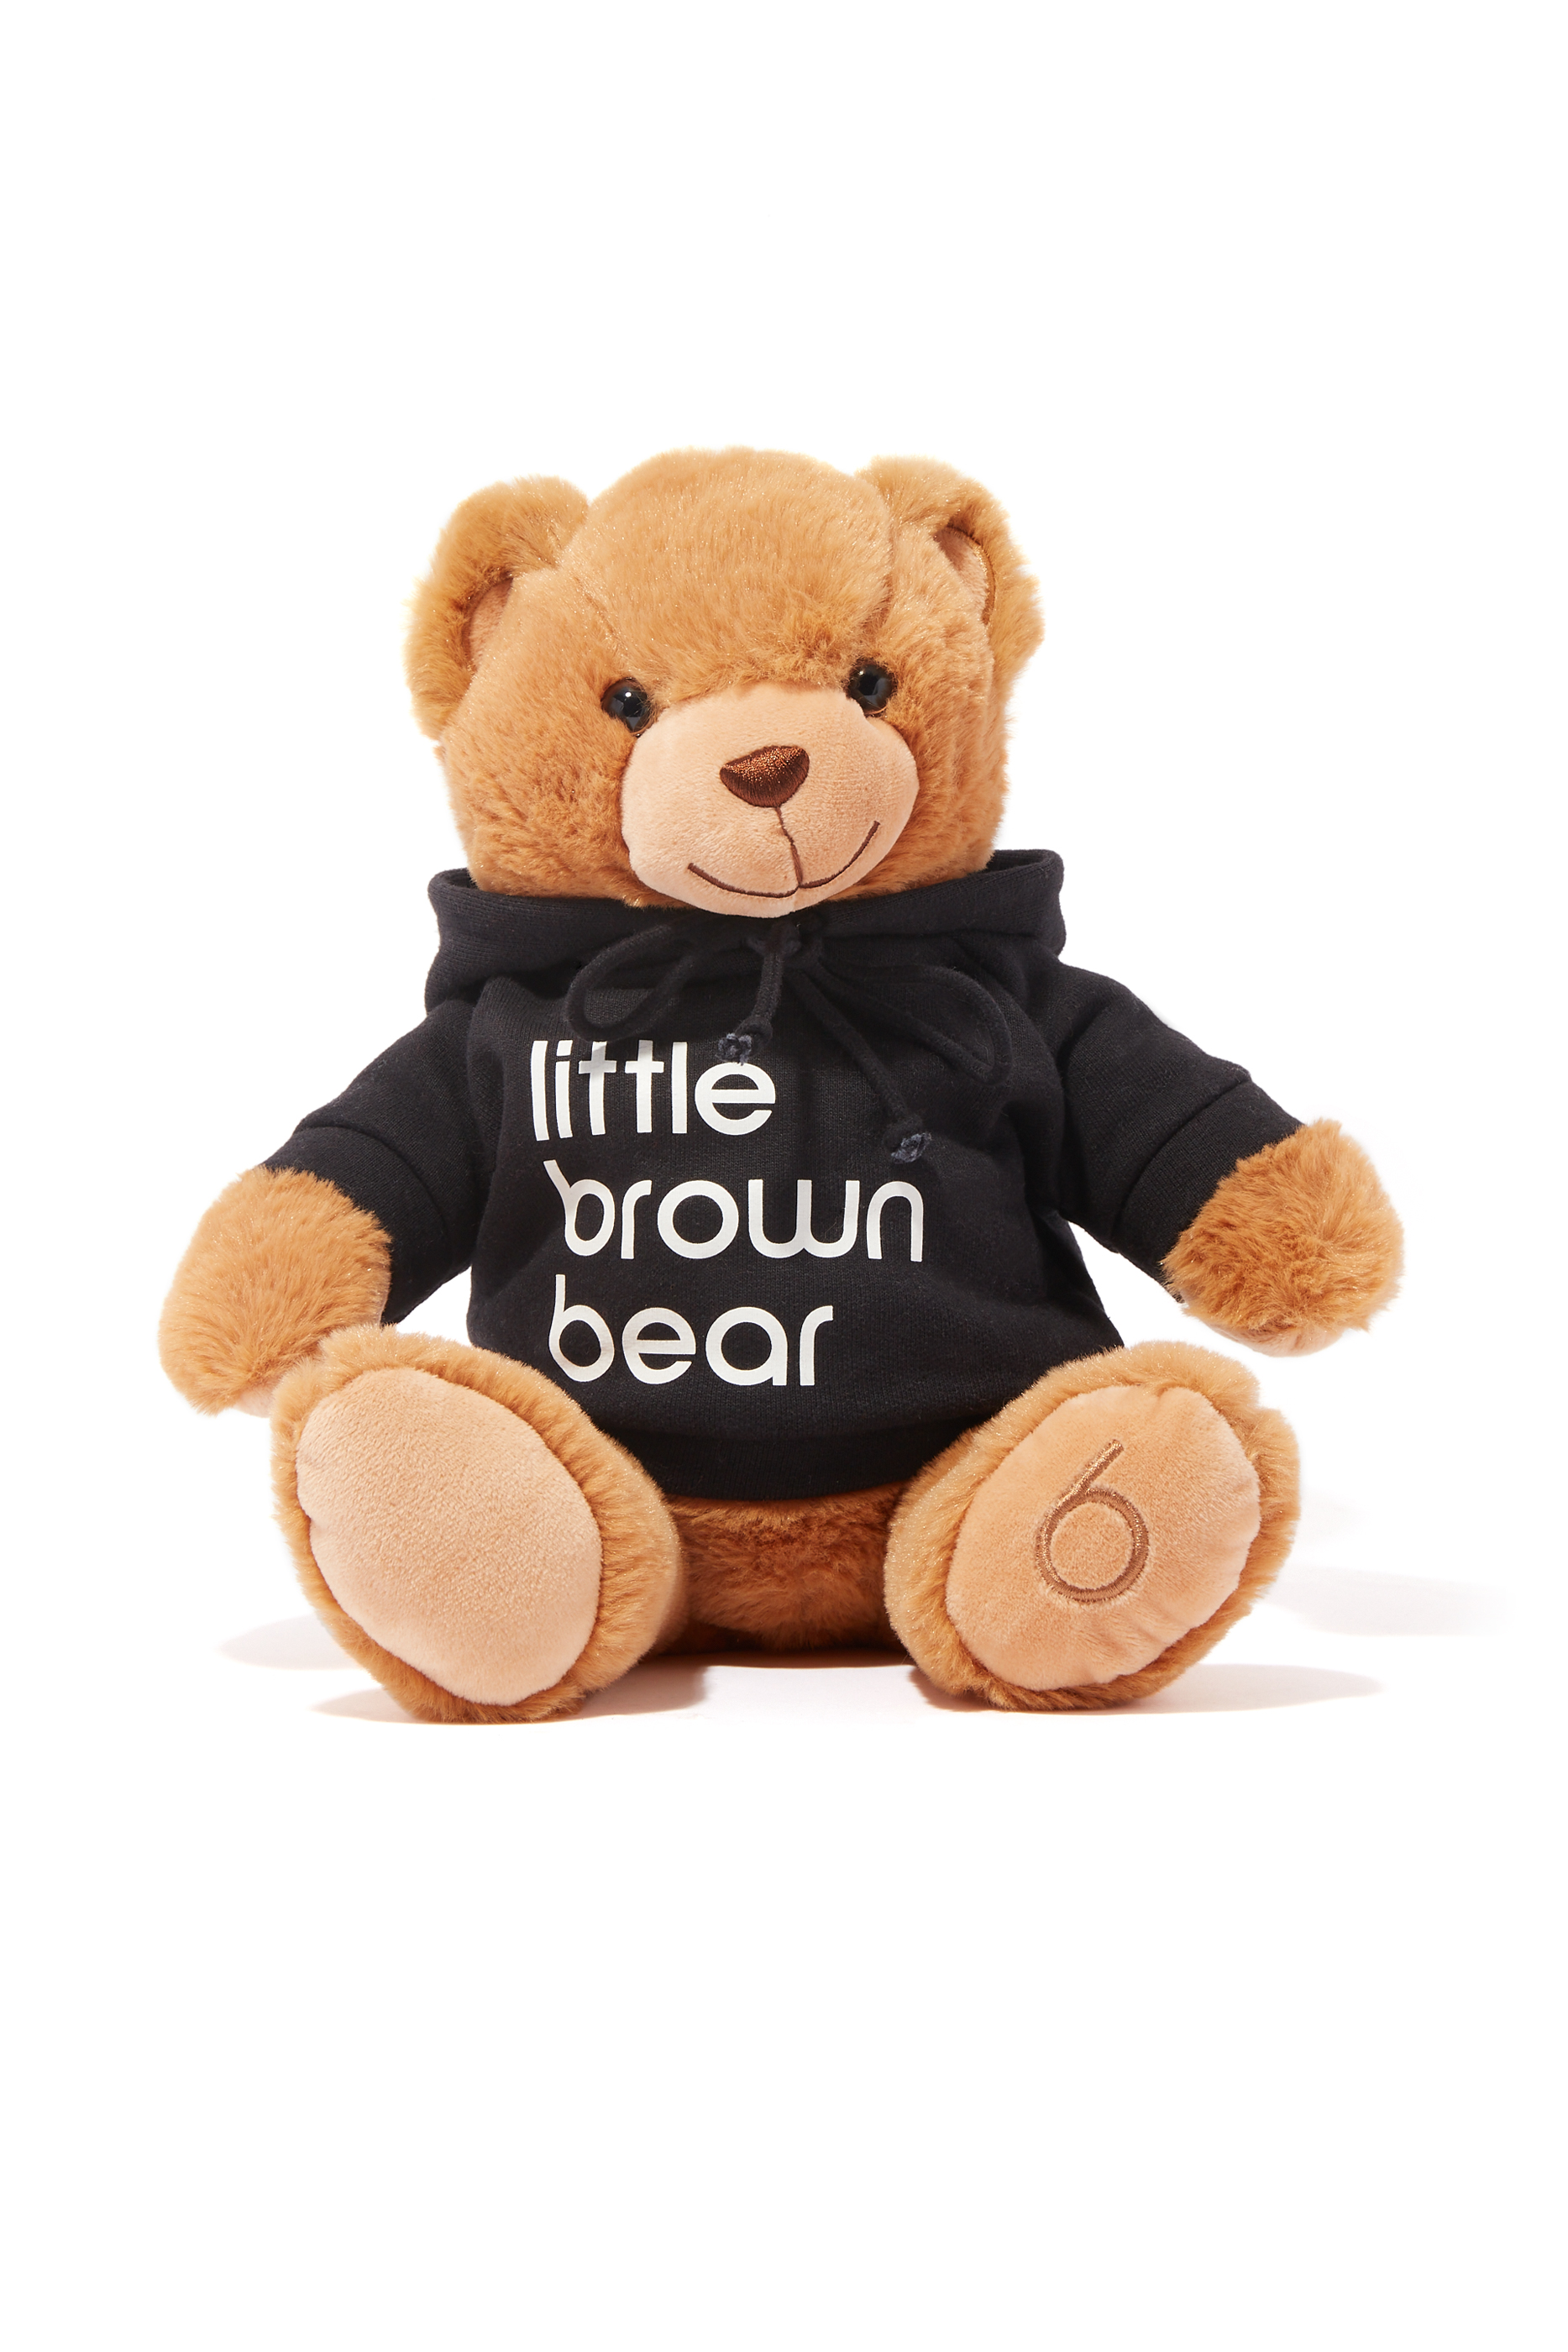 Buy Bloomingdales Little Brown Bear for Home Bloomingdale's Kuwait